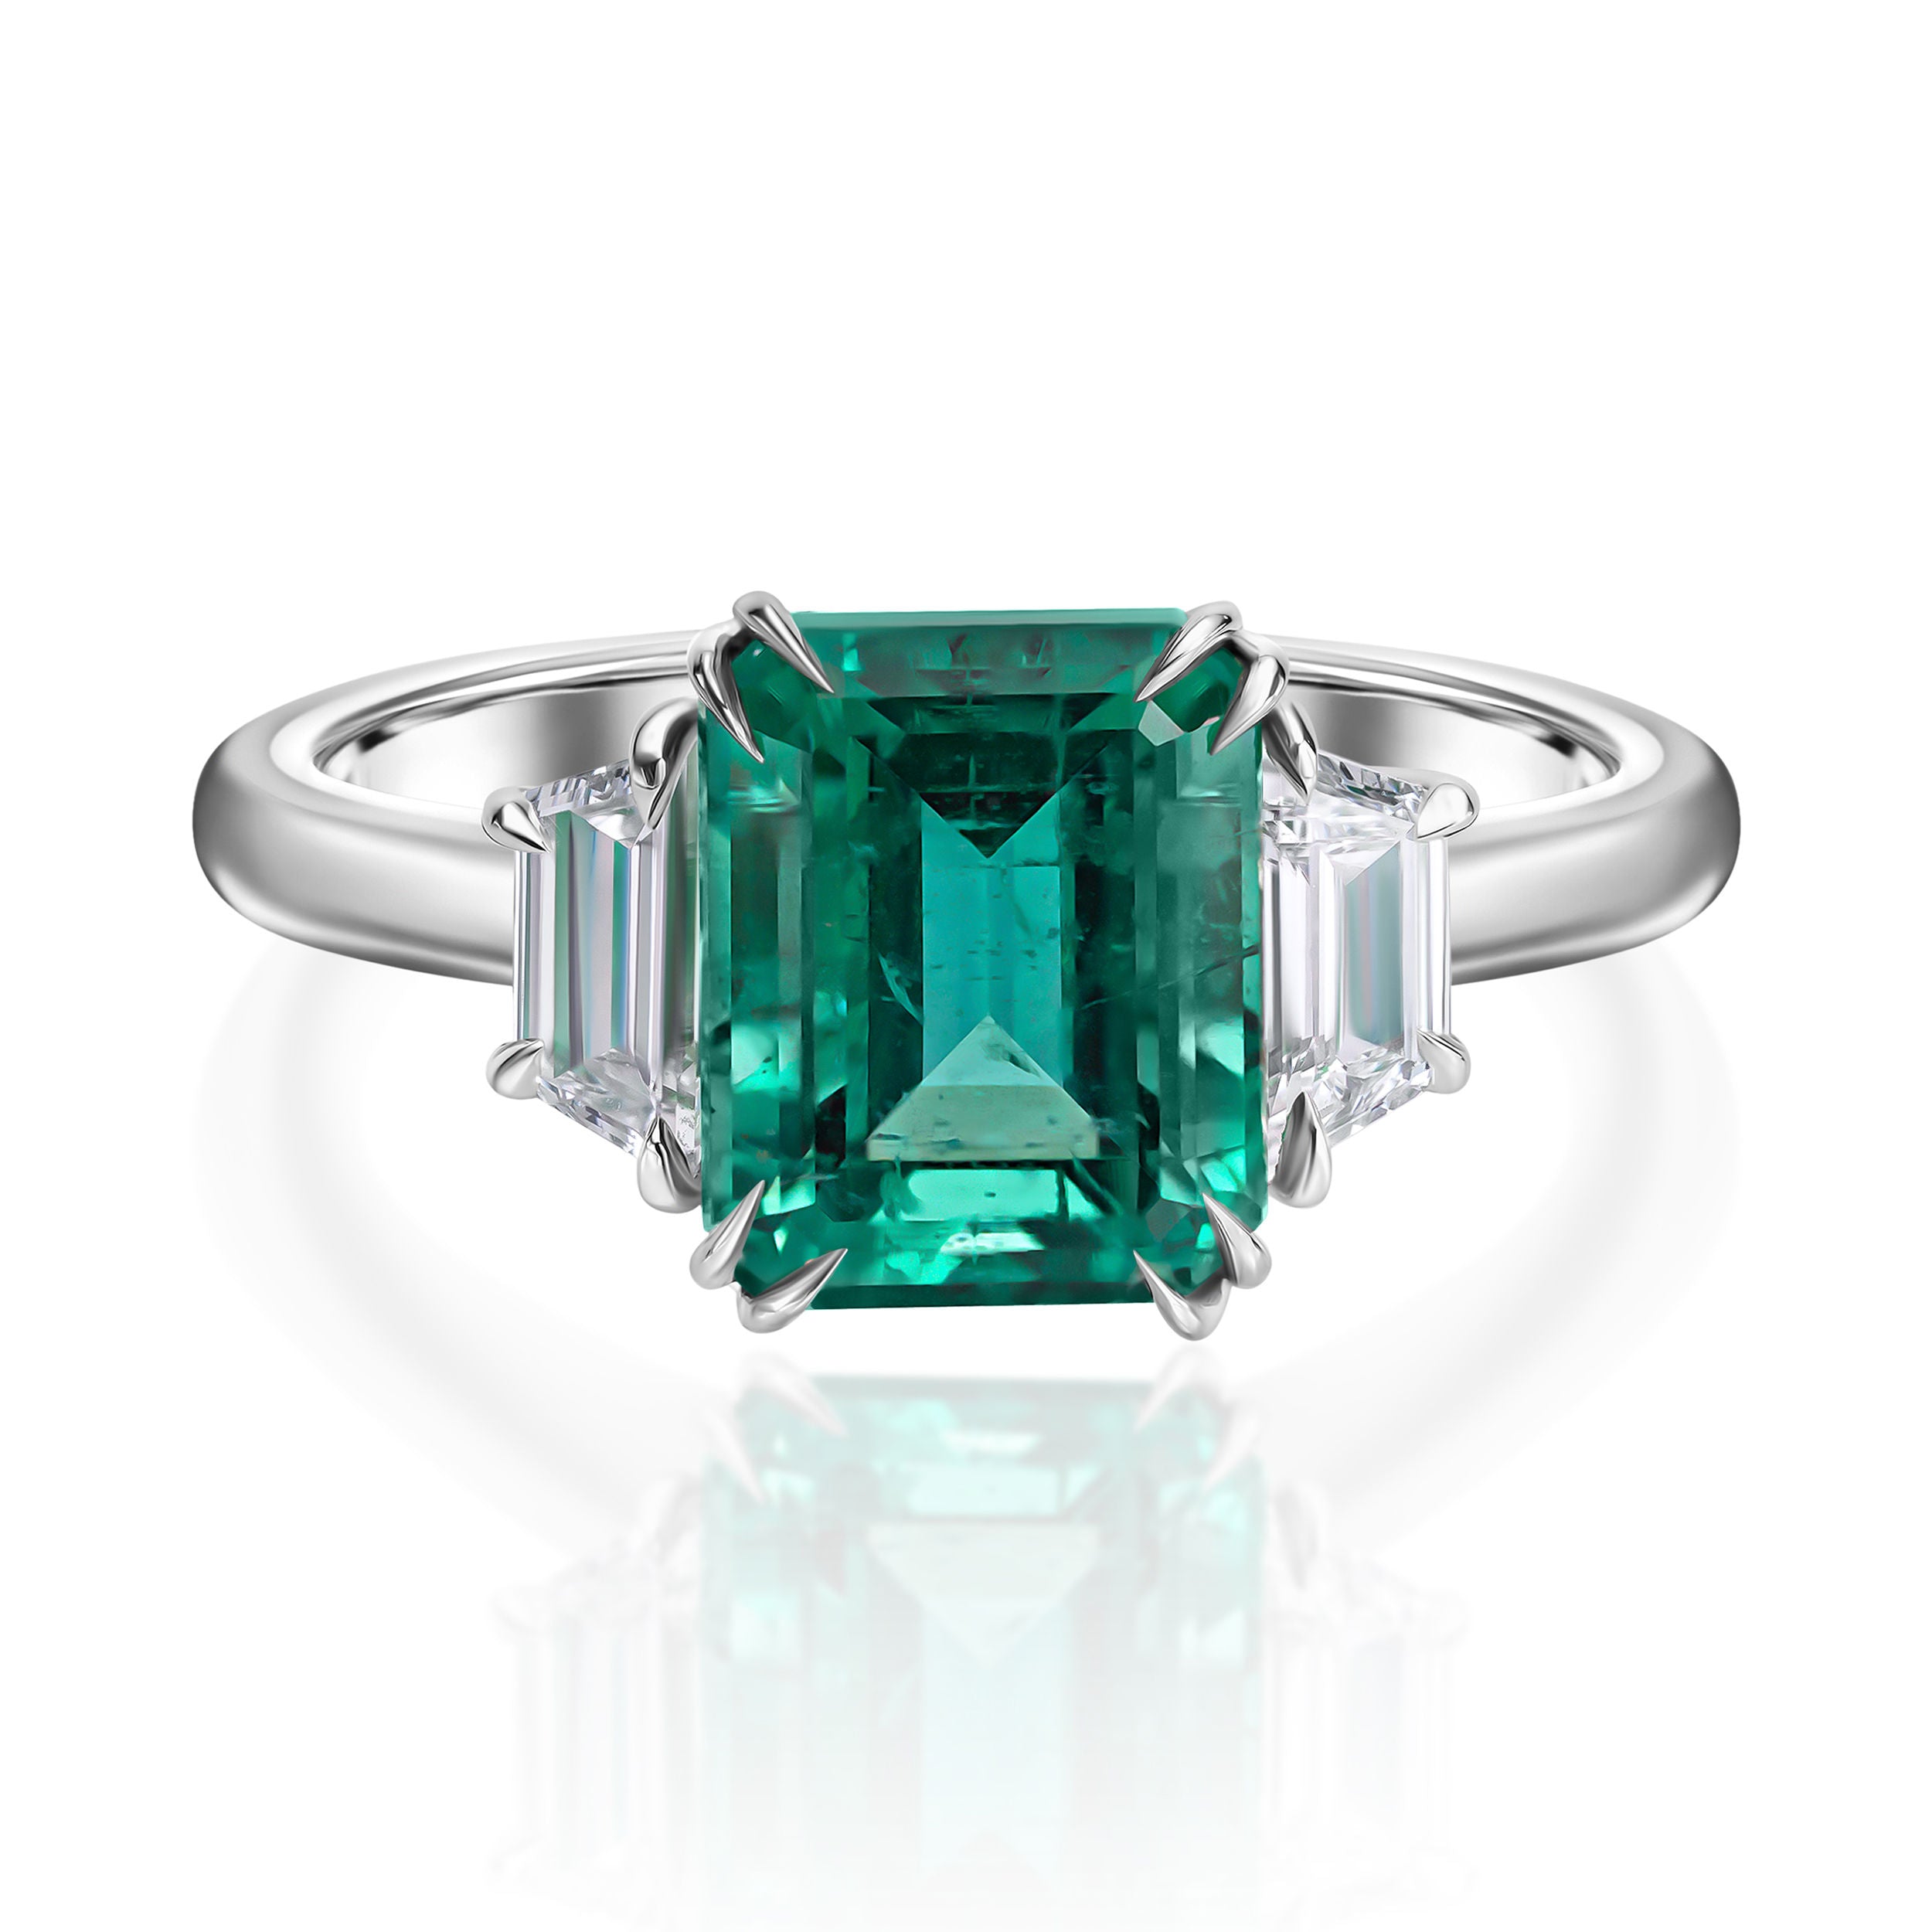 Exquisite Emerald-Cut Emerald Ring -3.64ct TW